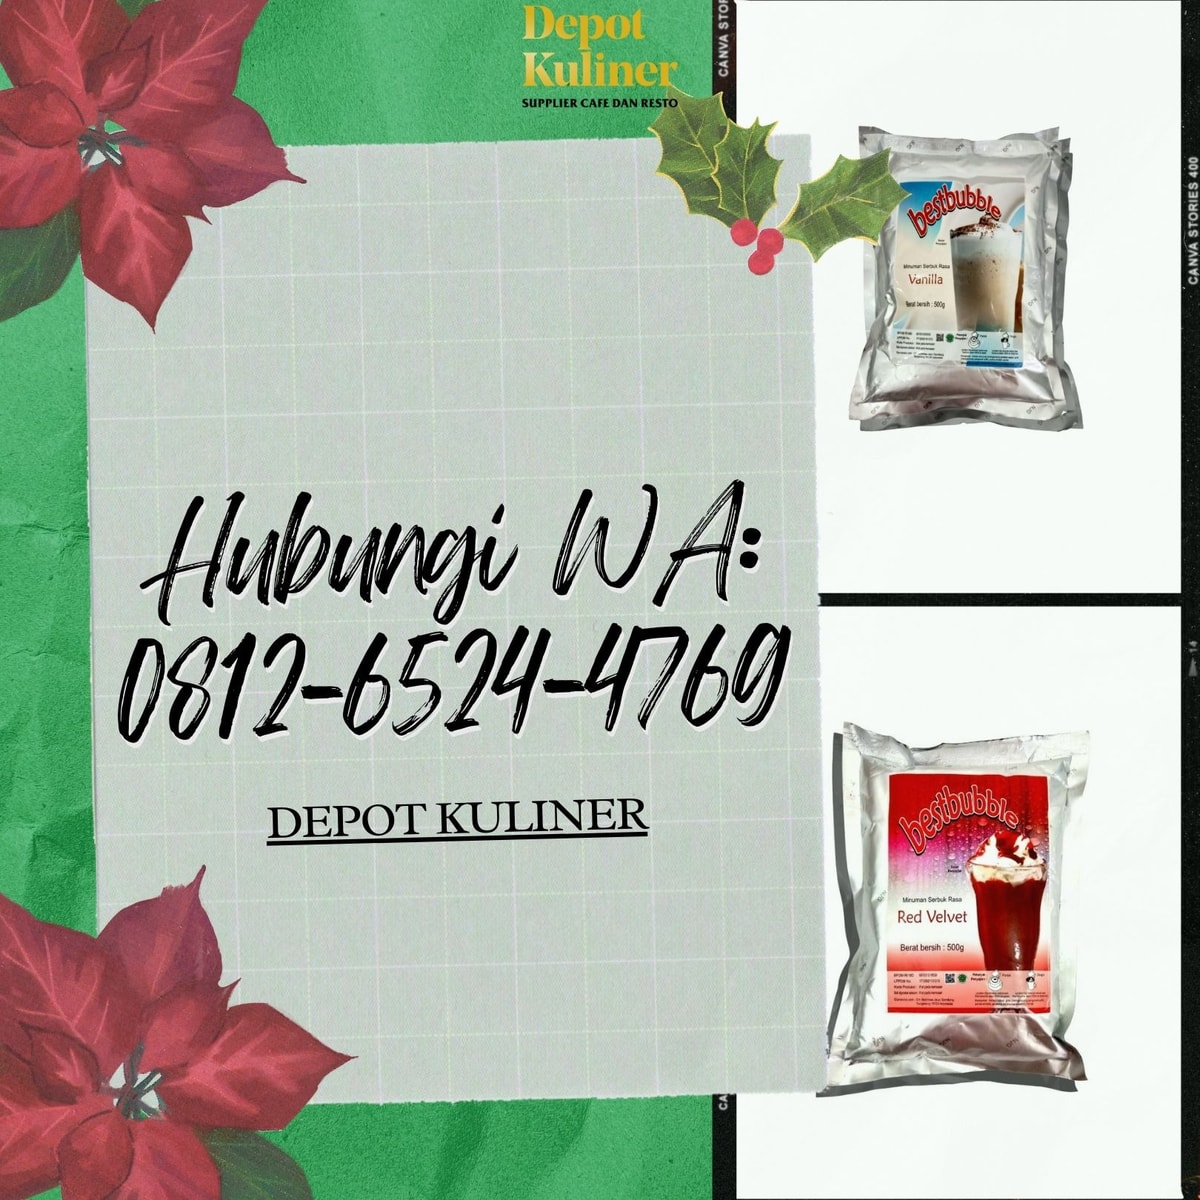 HARGA IRIT, Call 0812-6524-4769, Distributor Bubuk Minuman Di Medan